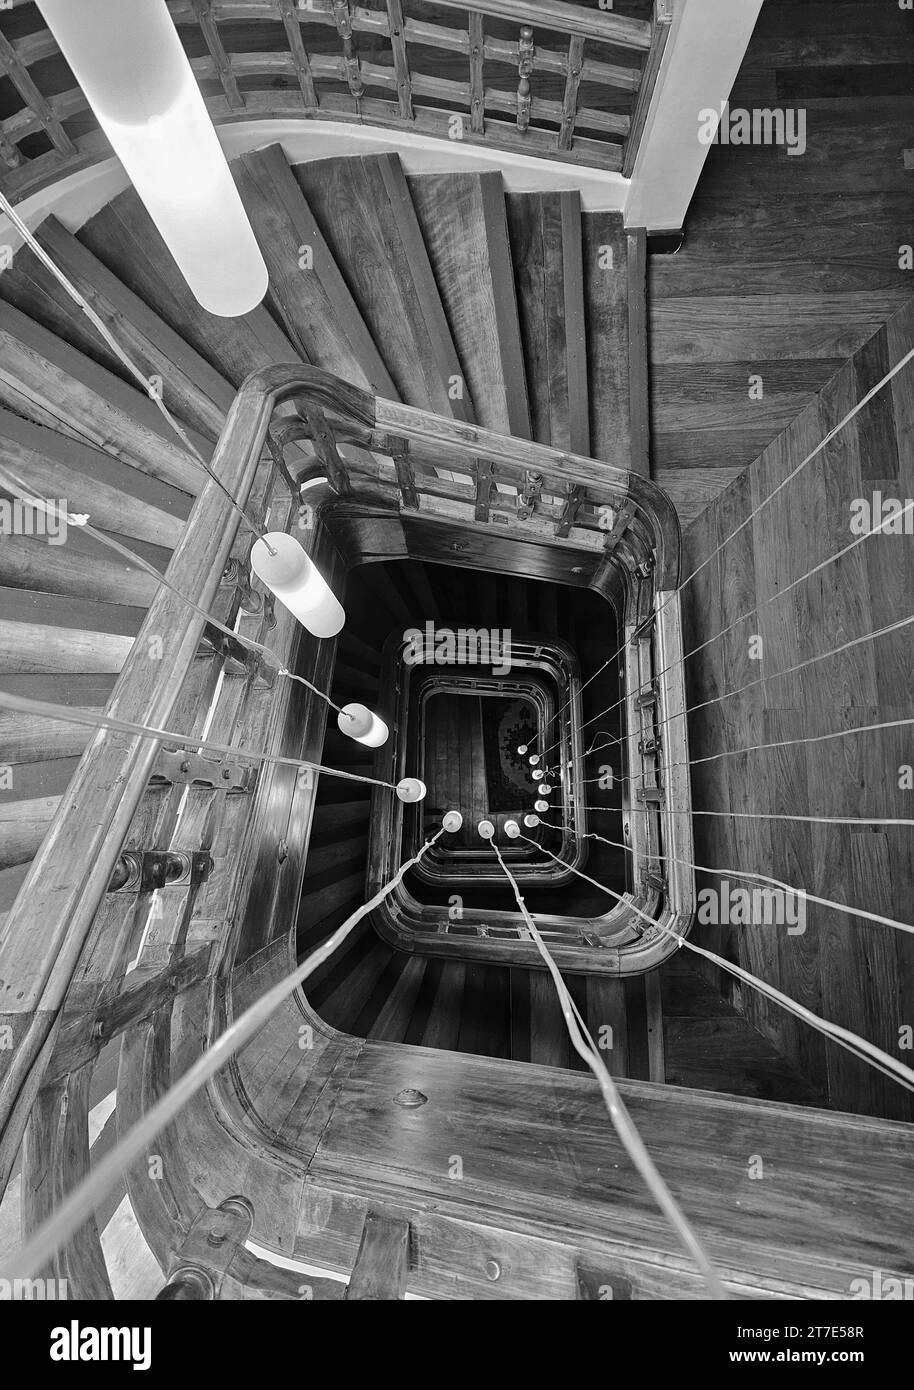 Una bella fotografia in bianco e nero di una scalinata robusta e robusta, adornata da corde intrecciate che corrono dall'alto Foto Stock